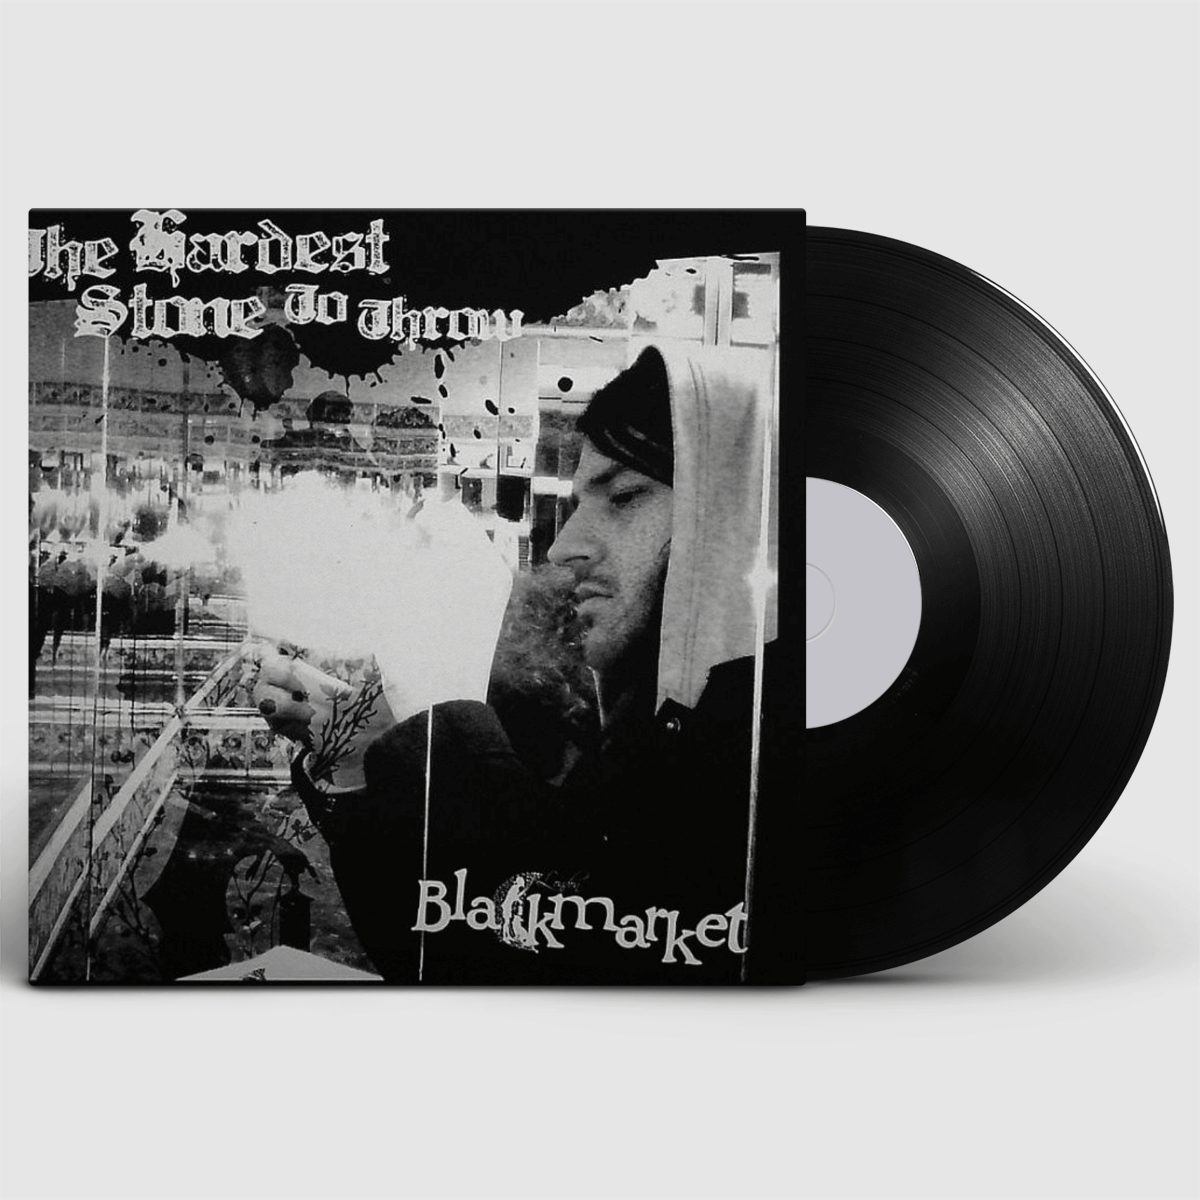 London Blackmarket - The Hardest Stone To Throw: Vinyl 7" Single